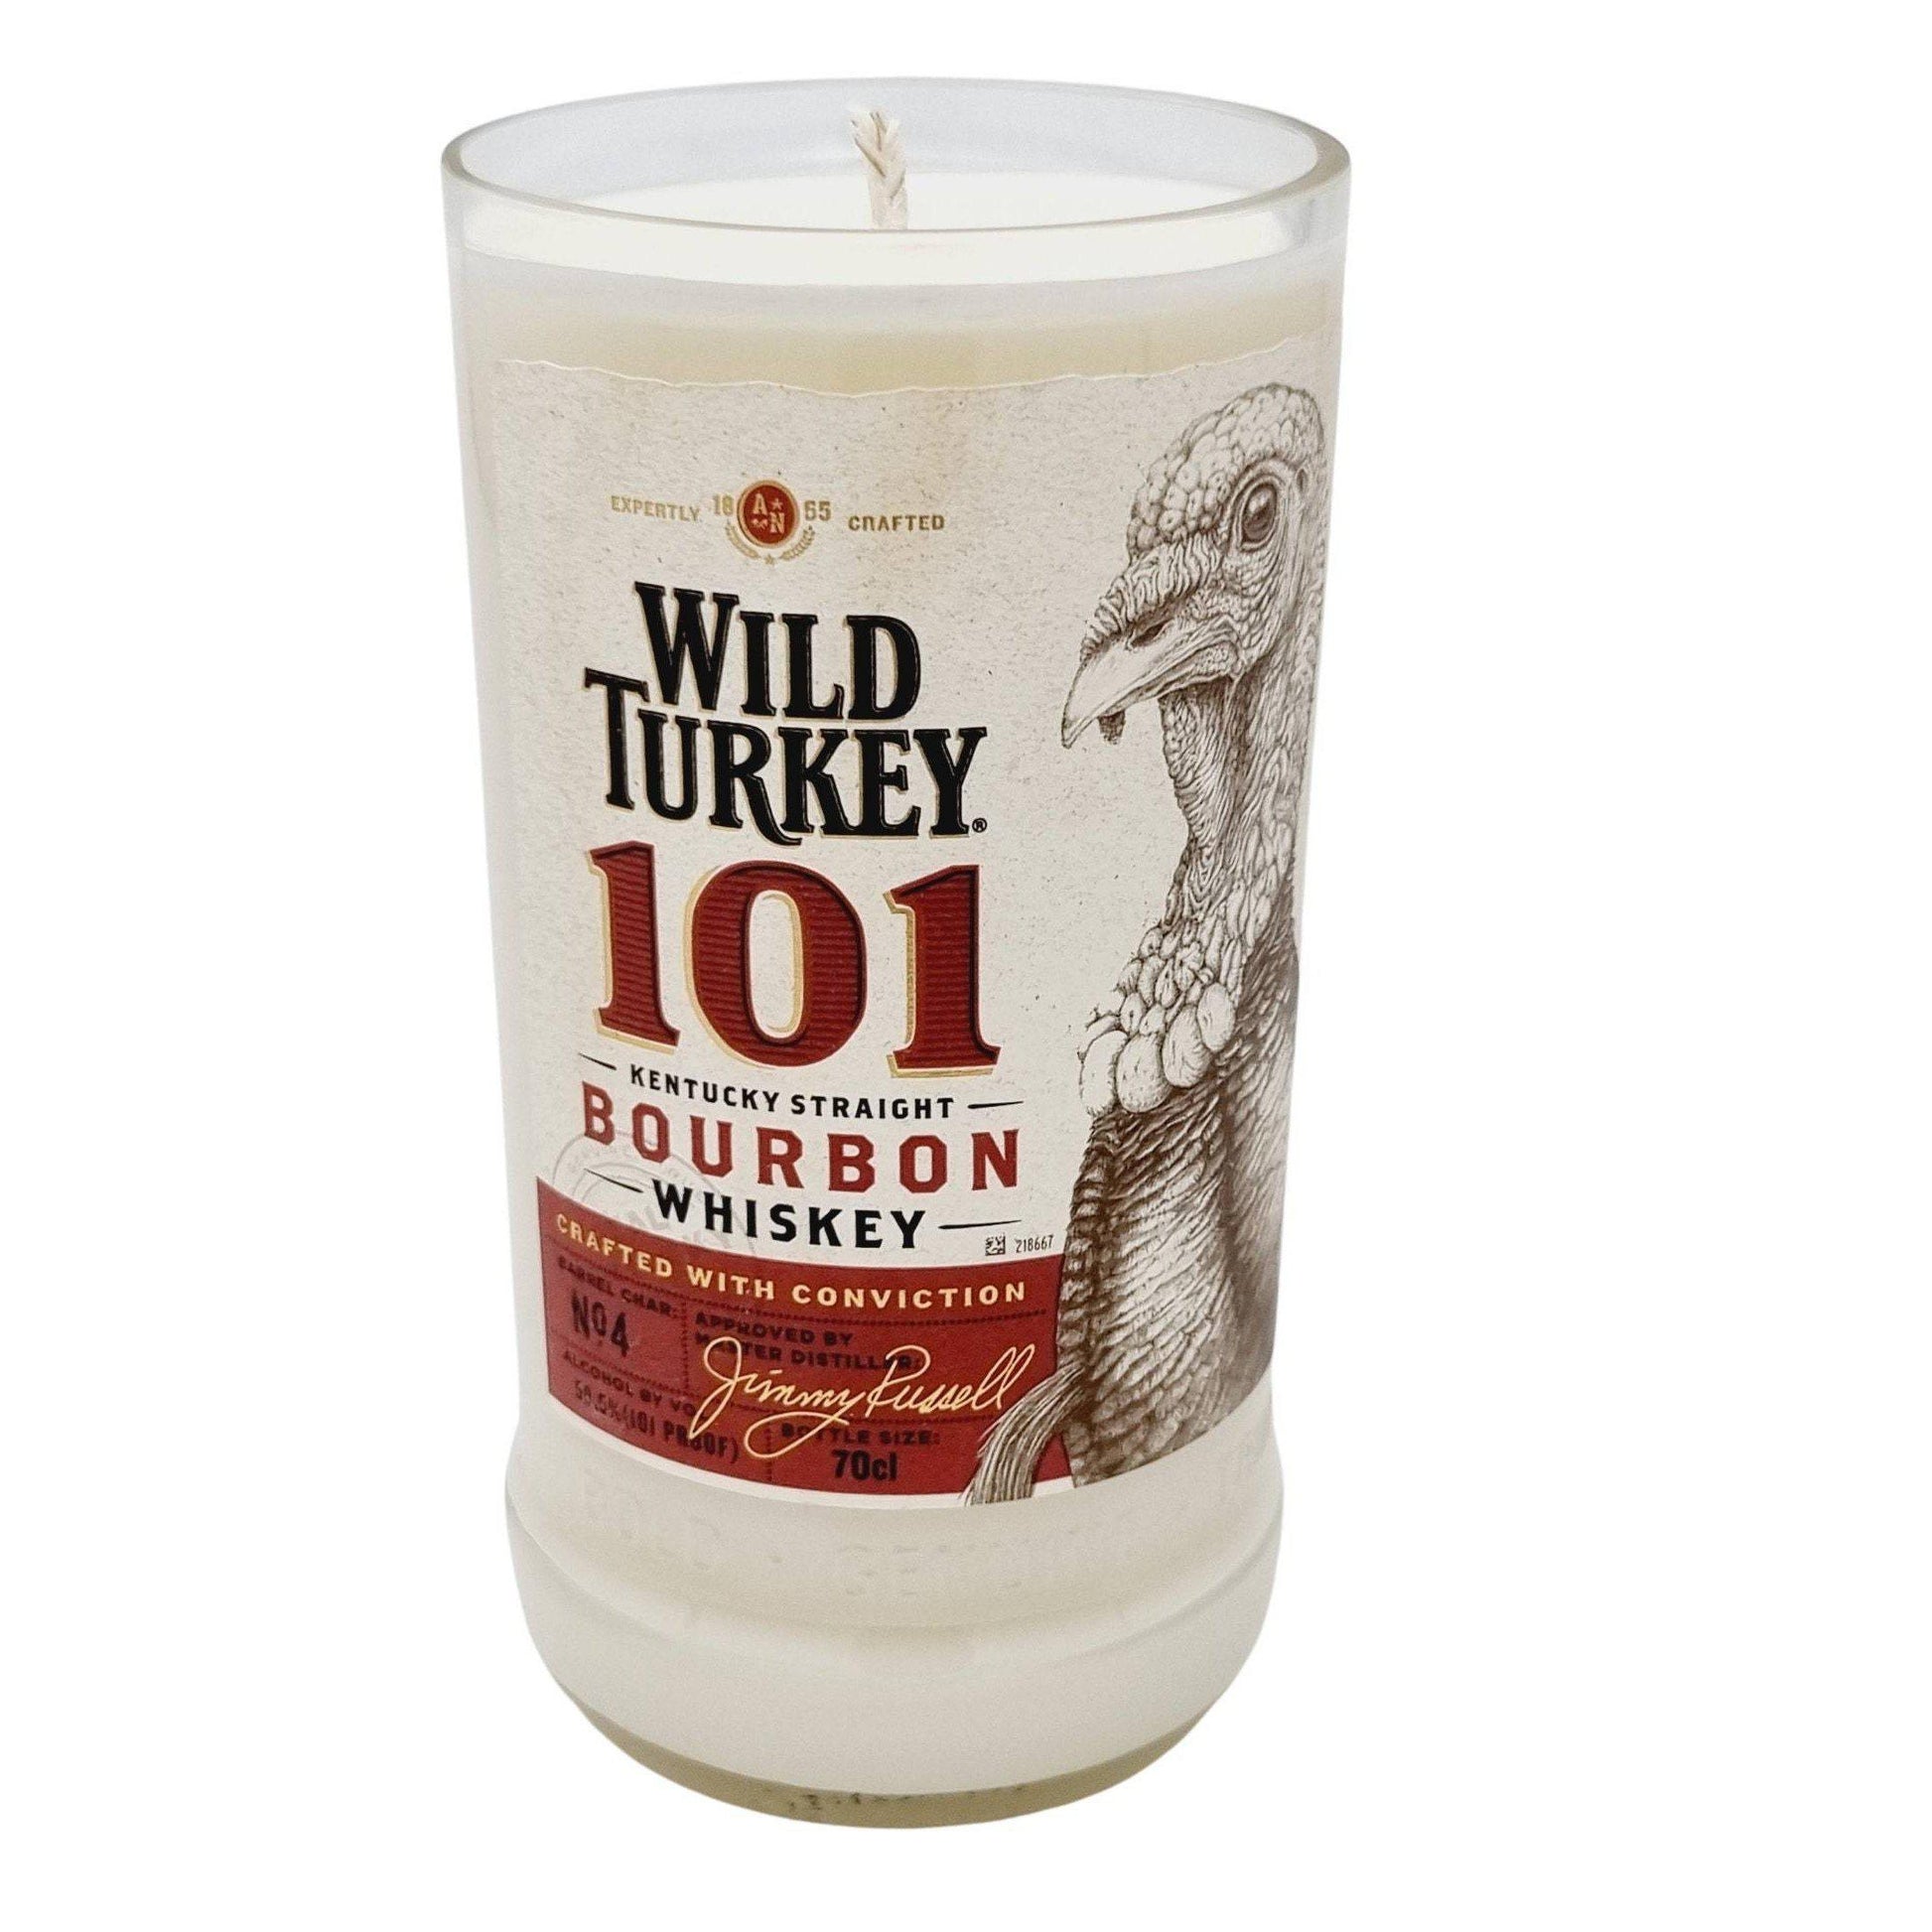 Wild Turkey 101 Whiskey Bottle Candle Adhock Homeware